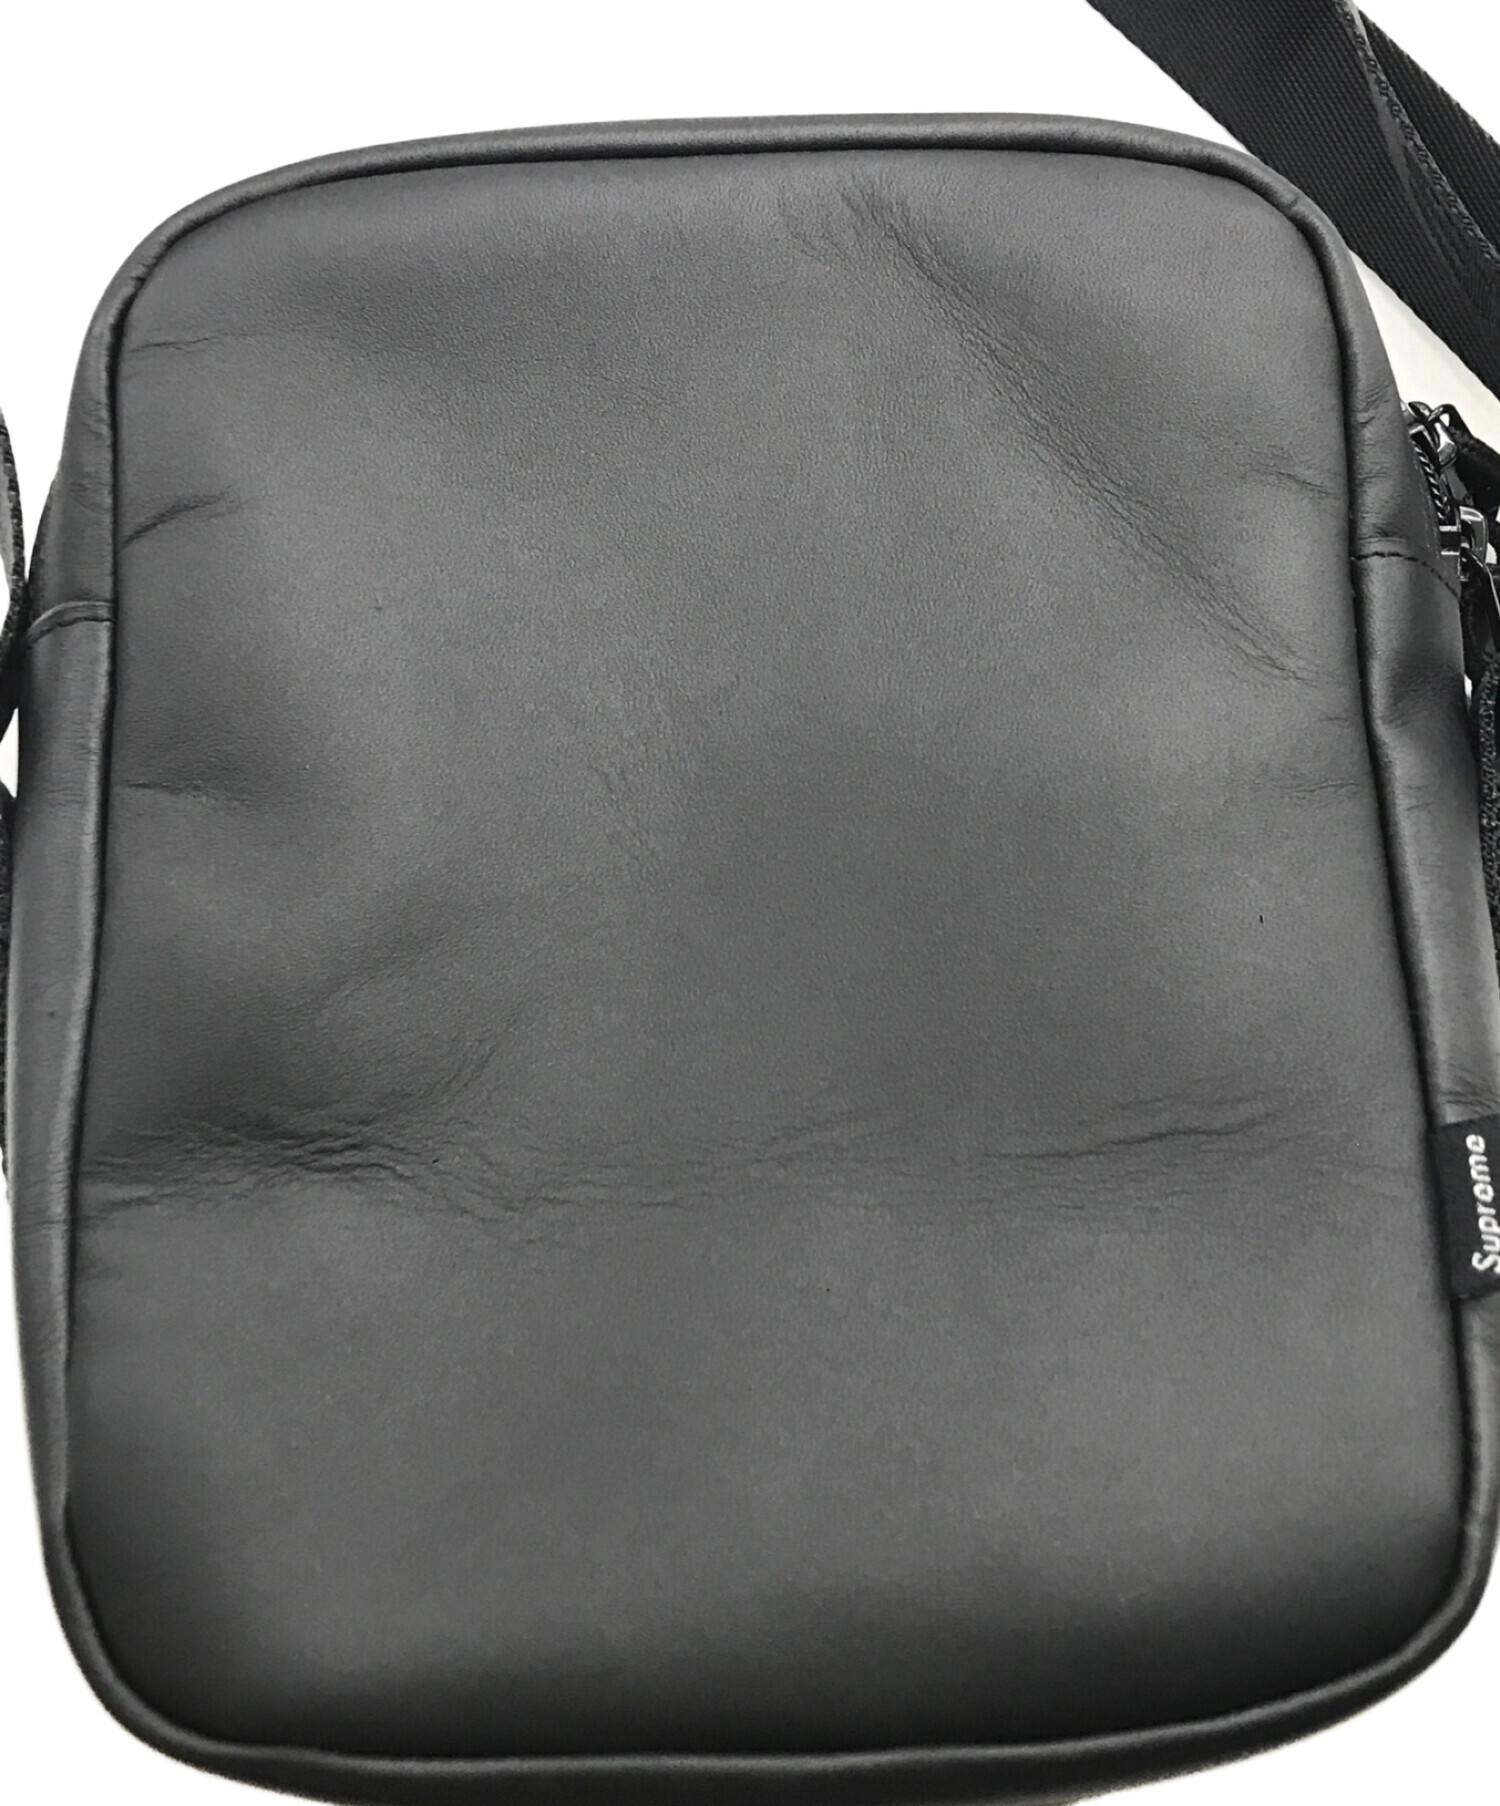 SUPREME (シュプリーム) 23FW Leather Shoulder Bag/23FWレザーショルダーバッグ ブラック